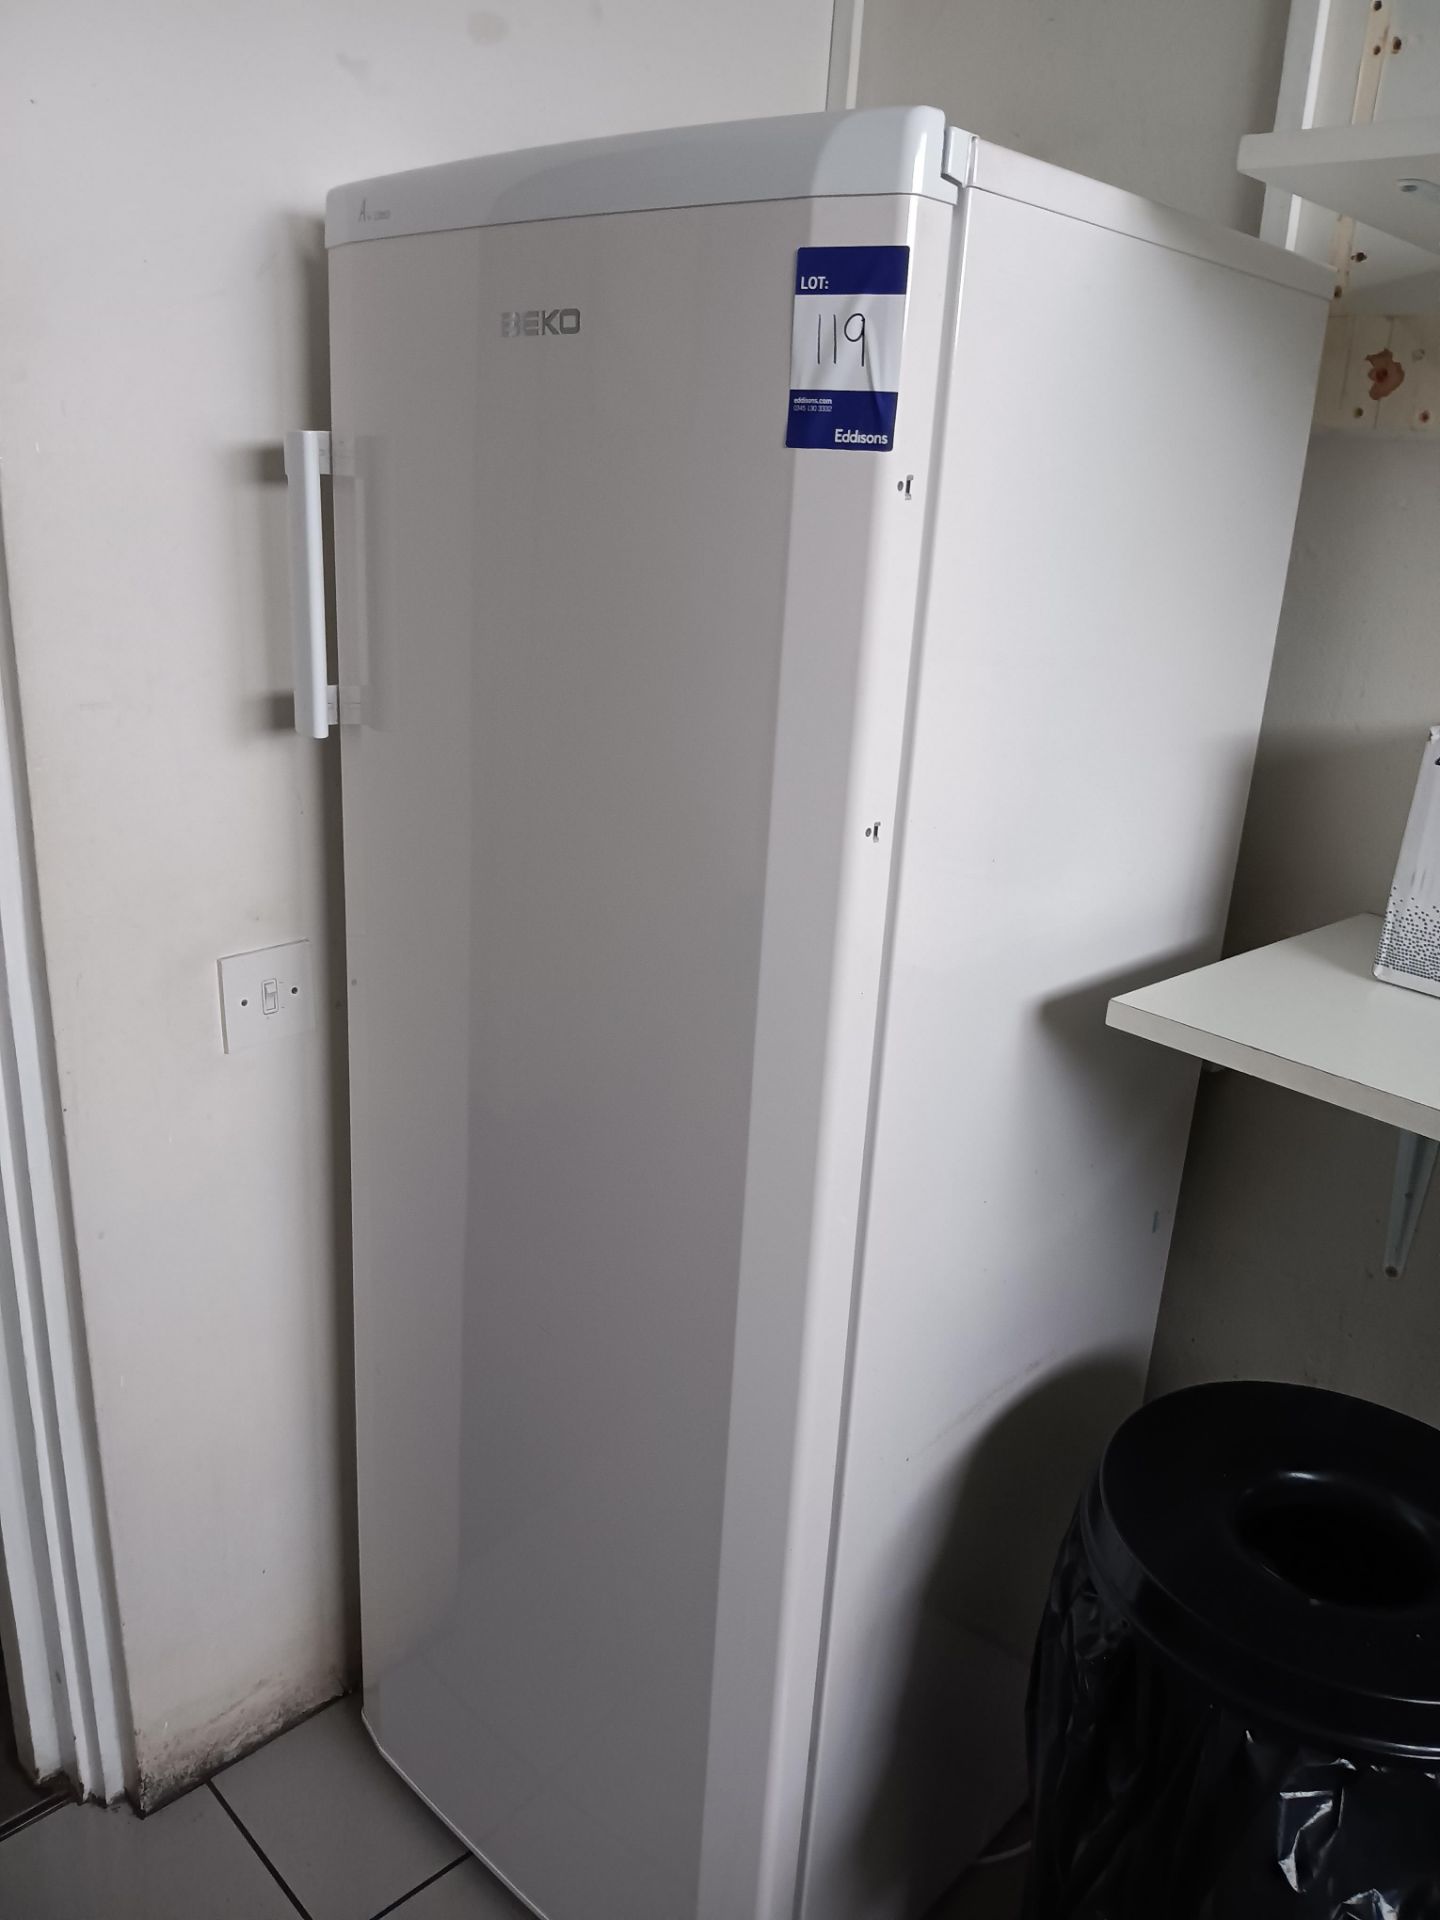 Beko A+ class fridge. LOCATED FIRST FLOOR